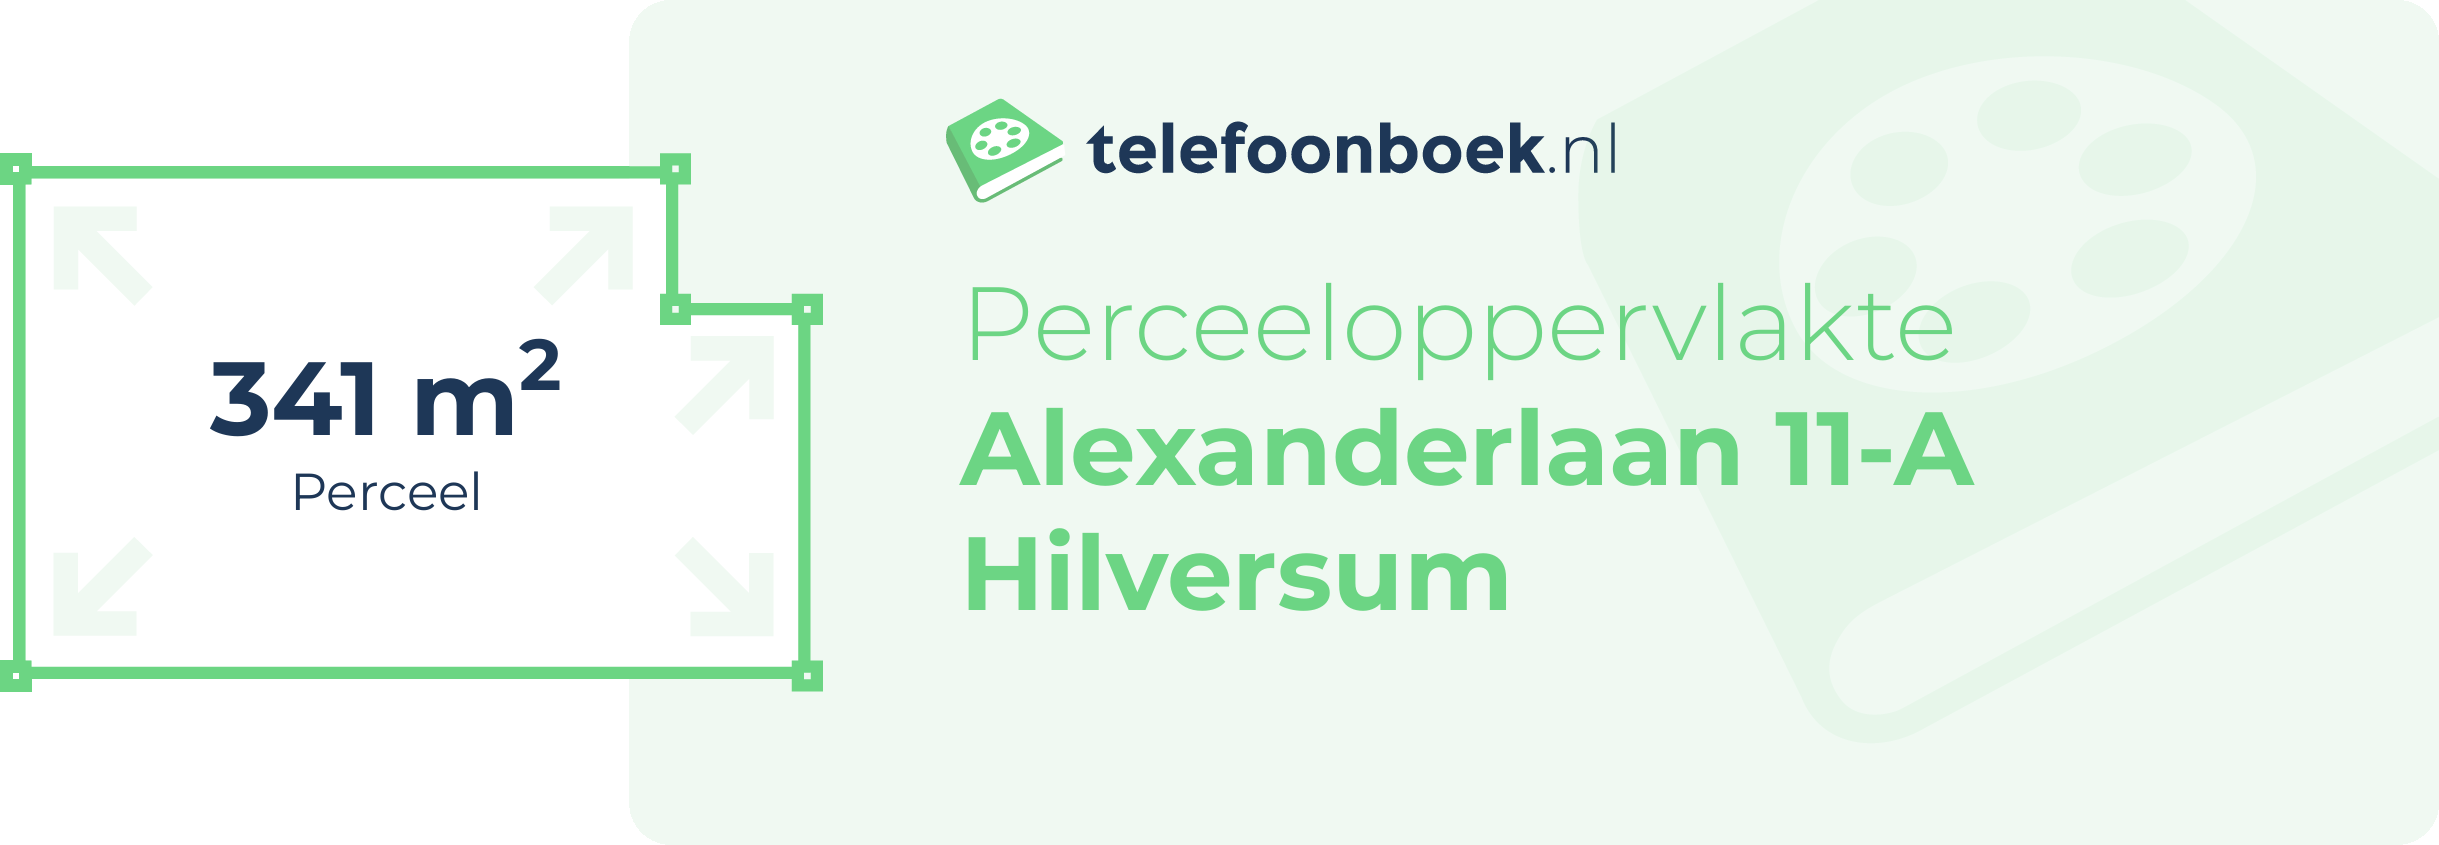 Perceeloppervlakte Alexanderlaan 11-A Hilversum